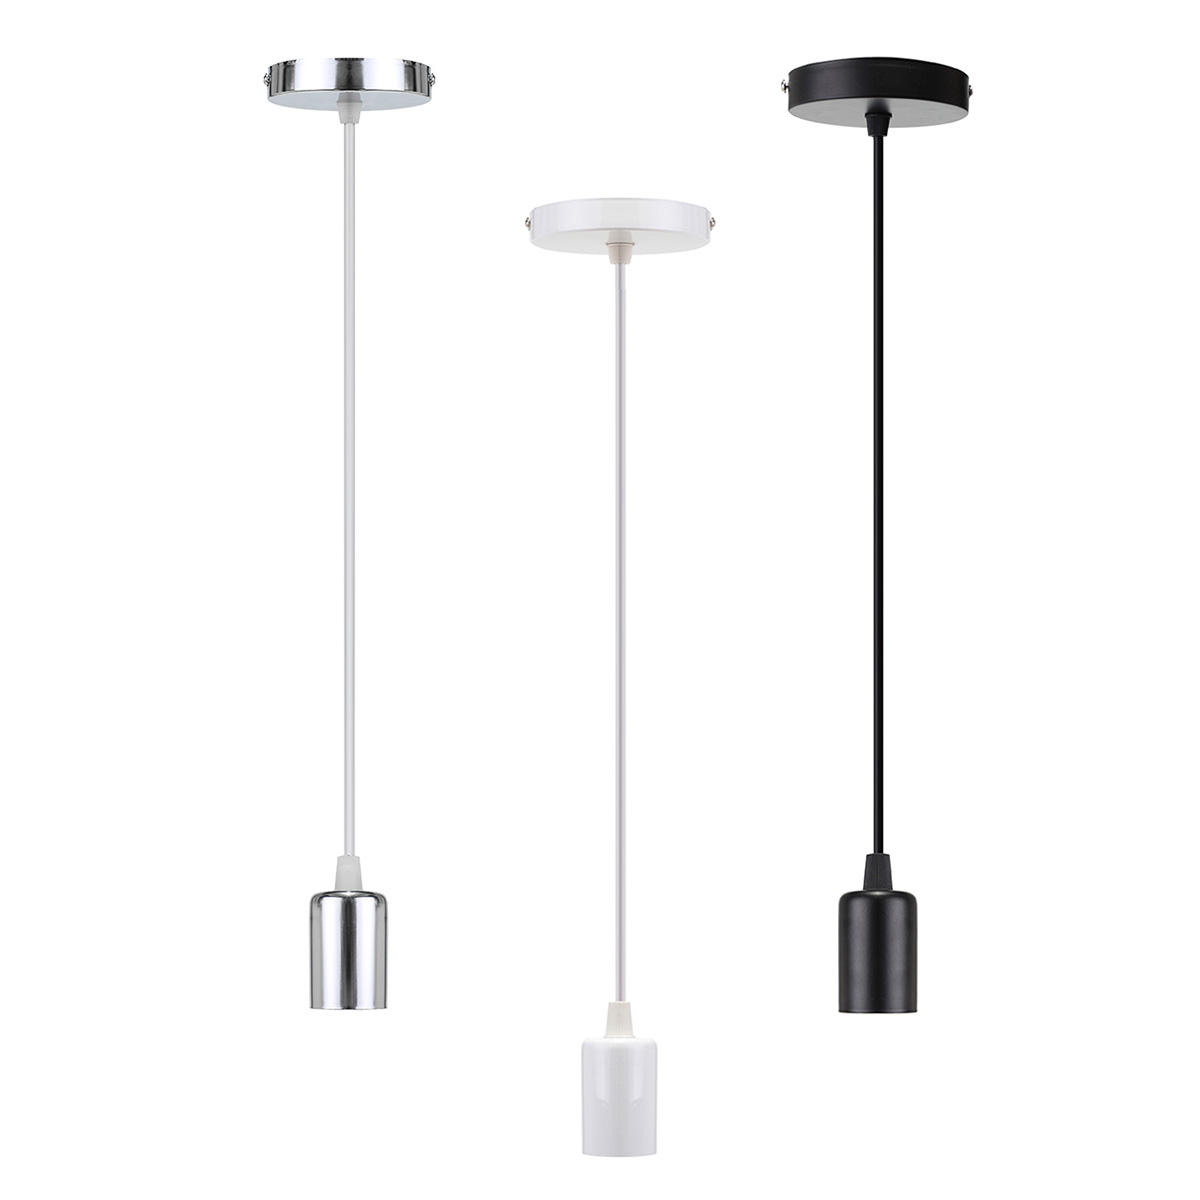 E27 Screw Ceiling Pendant Lamp Holder Socket Base Light Hanging Fitting Decor